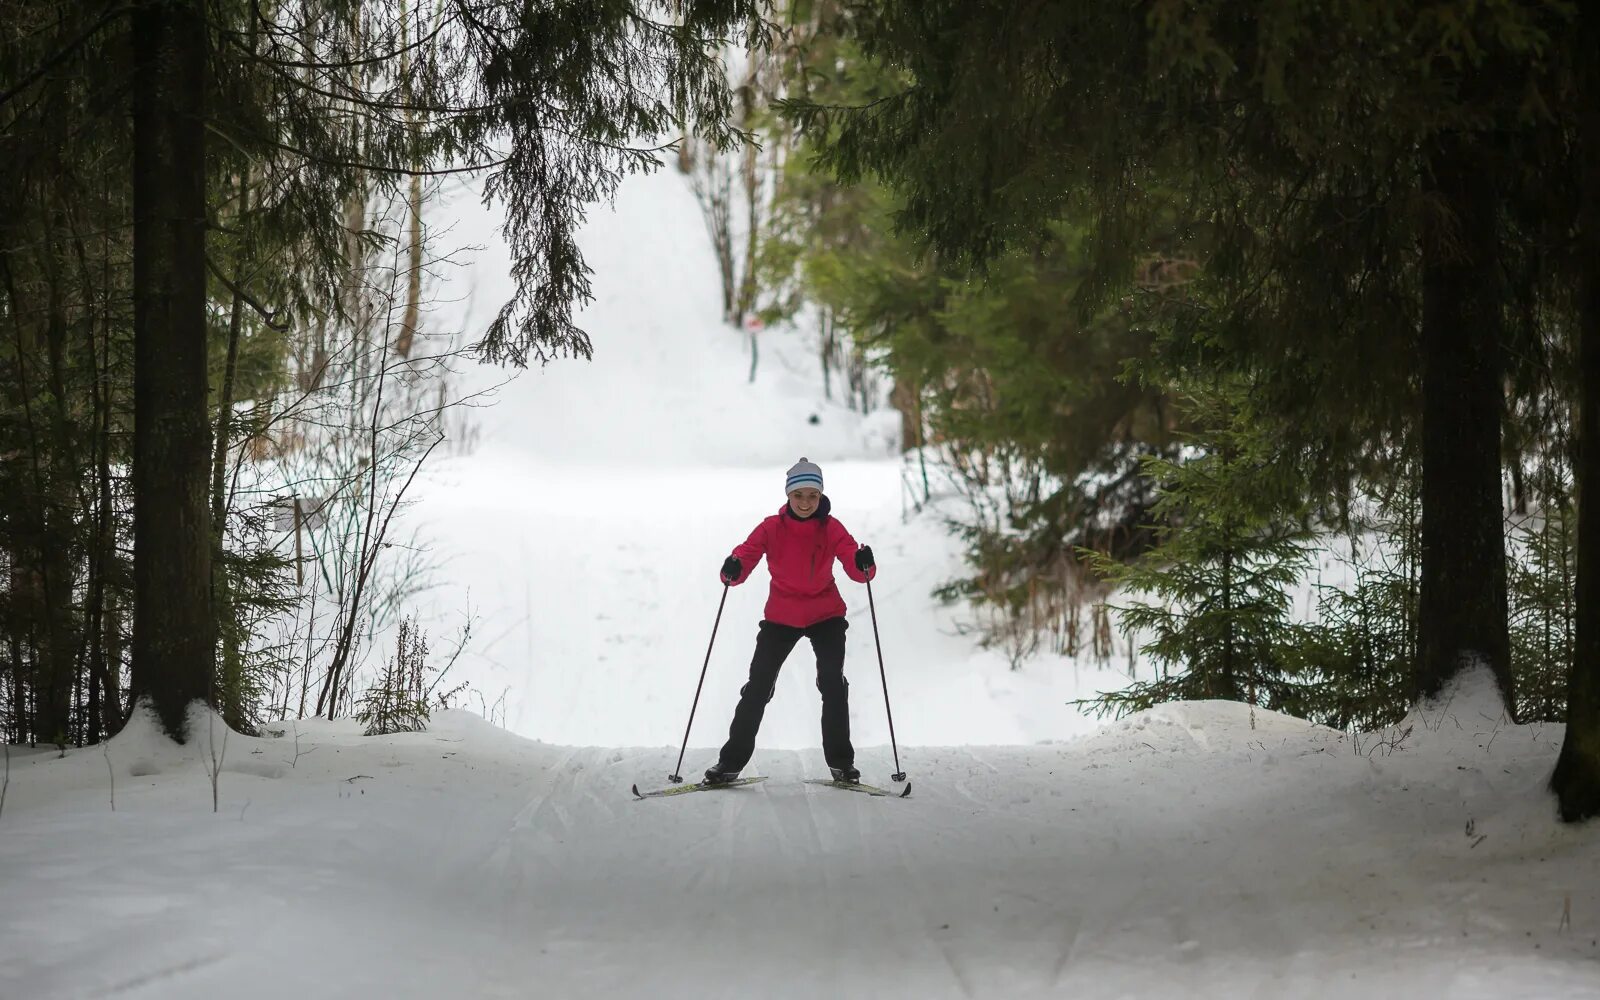 Участки лыжник. Лыжня в Битцевском лесу. Шаховская лыжная трасса. Катание на лыжах в лесу. Лыжная прогулка в лесу.